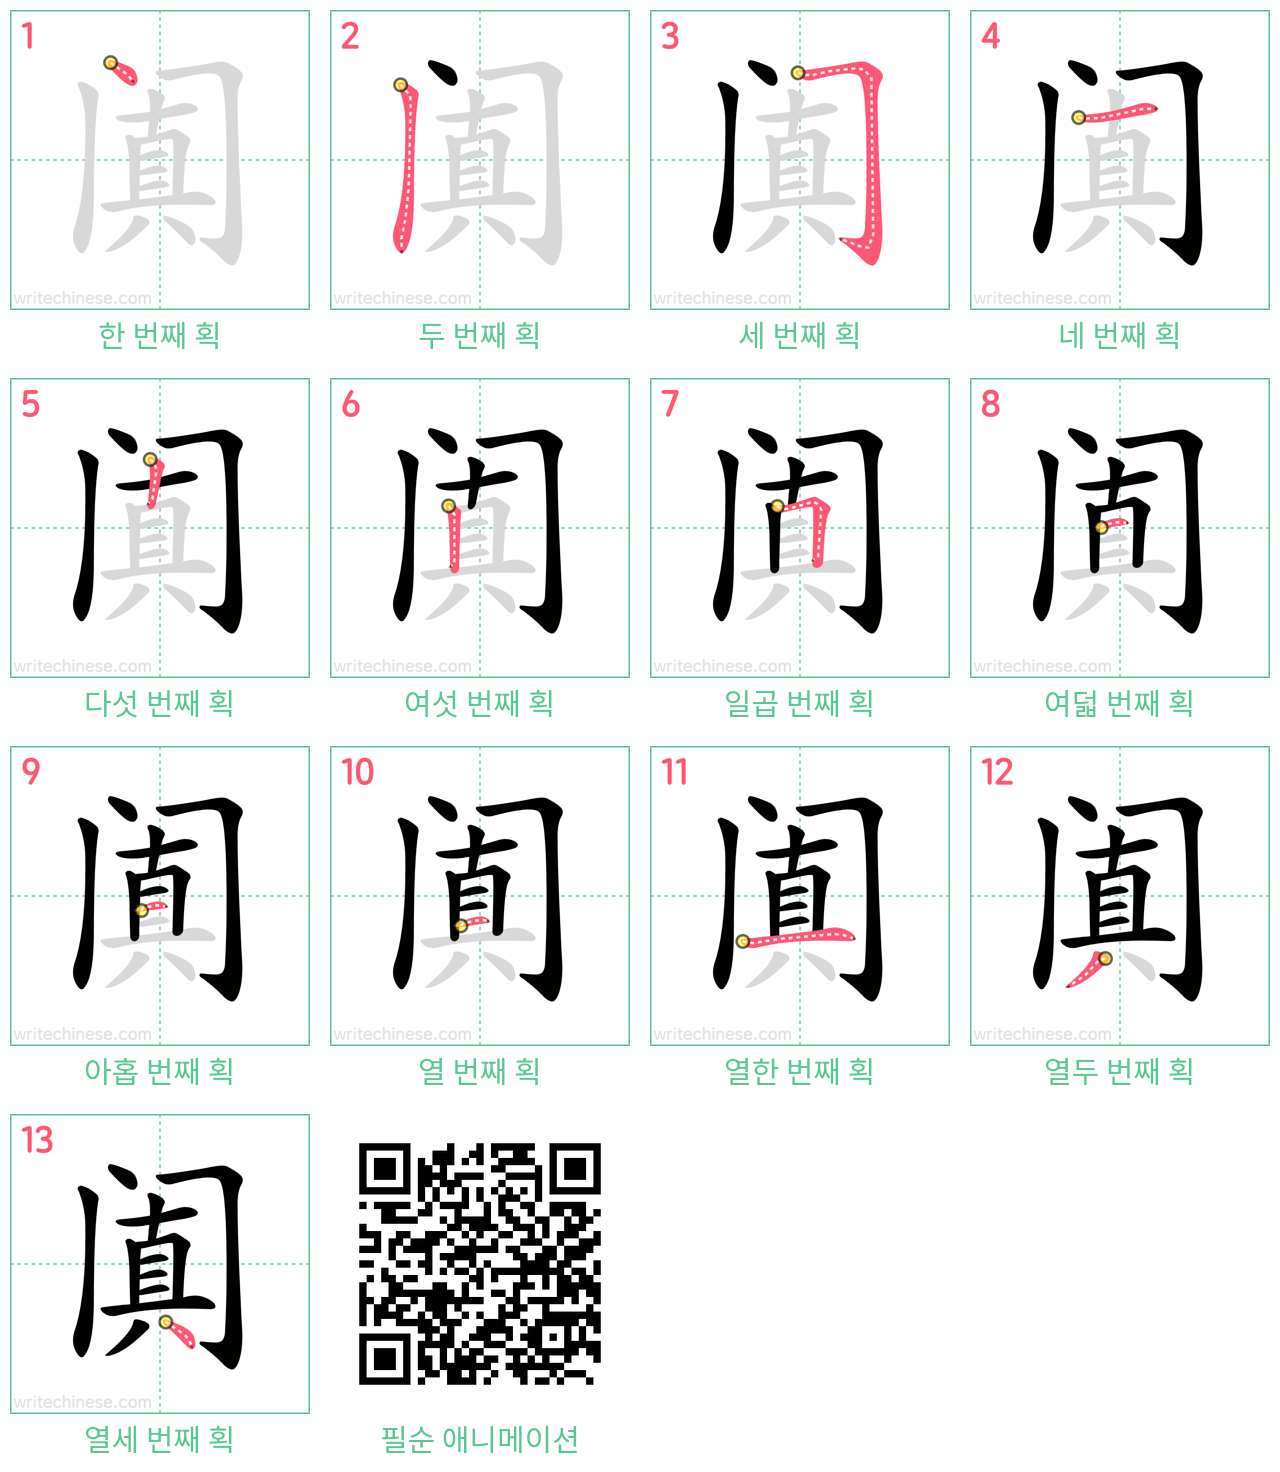 阗 step-by-step stroke order diagrams